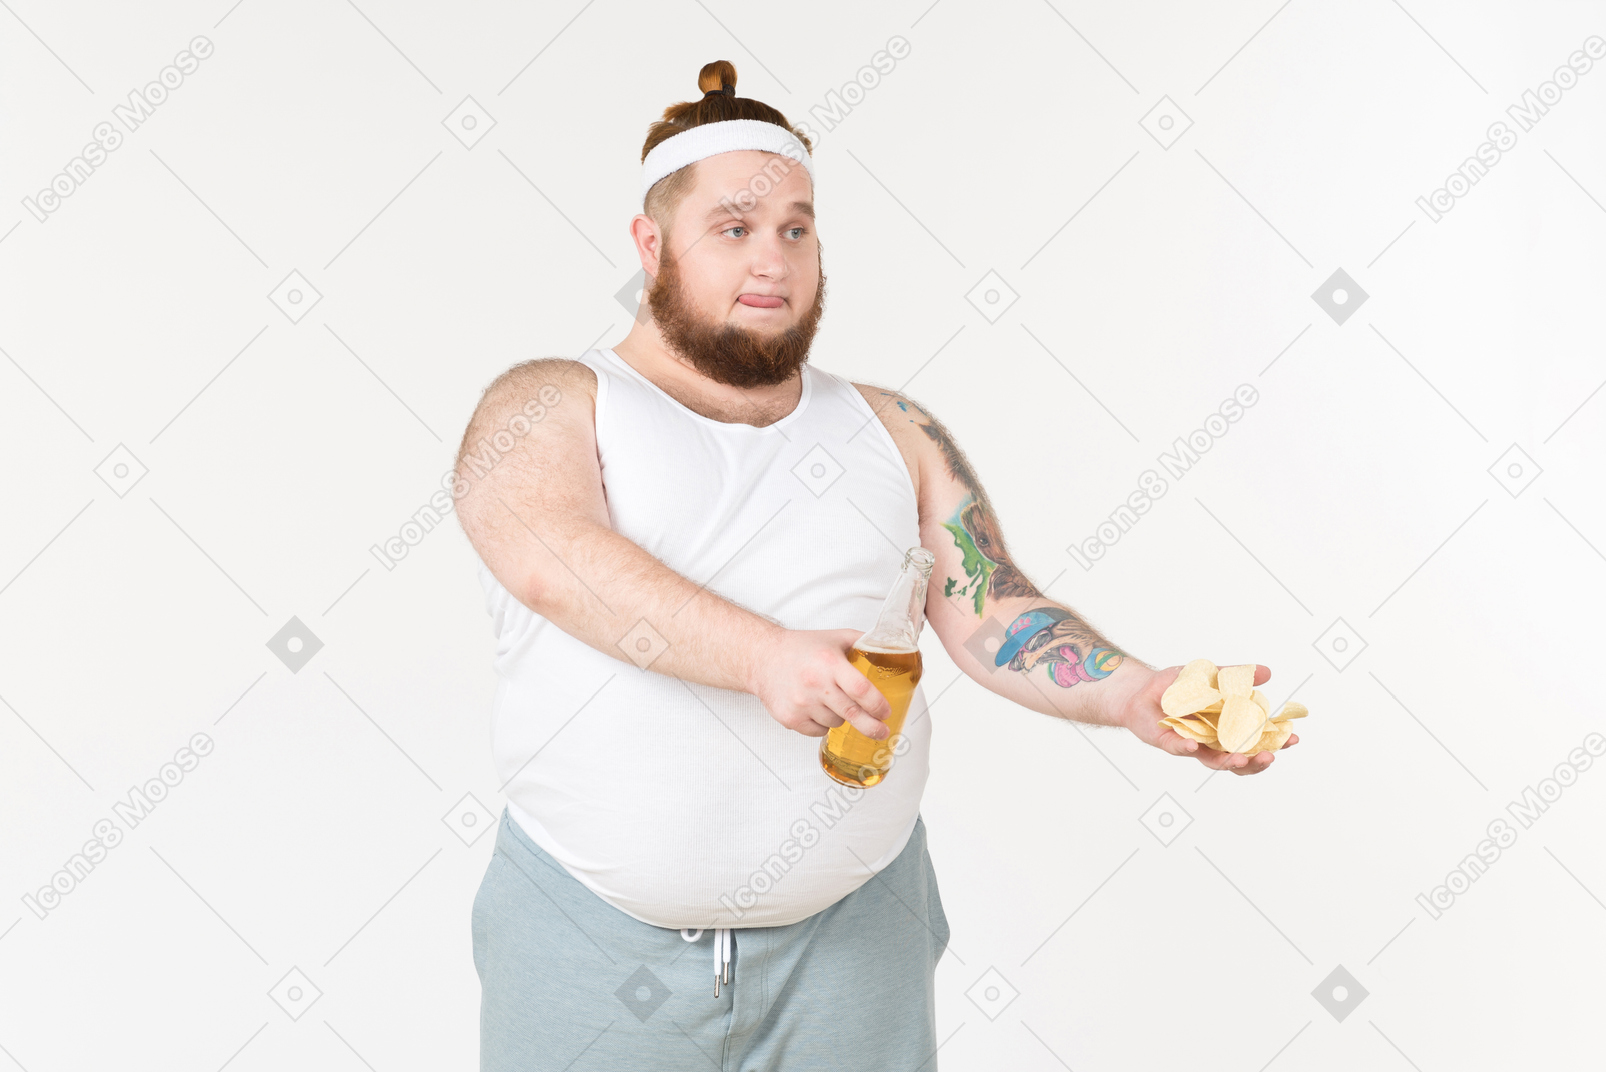 맥주와 감자 칩을 공유하는 운동복을 입은 뚱뚱한 남자